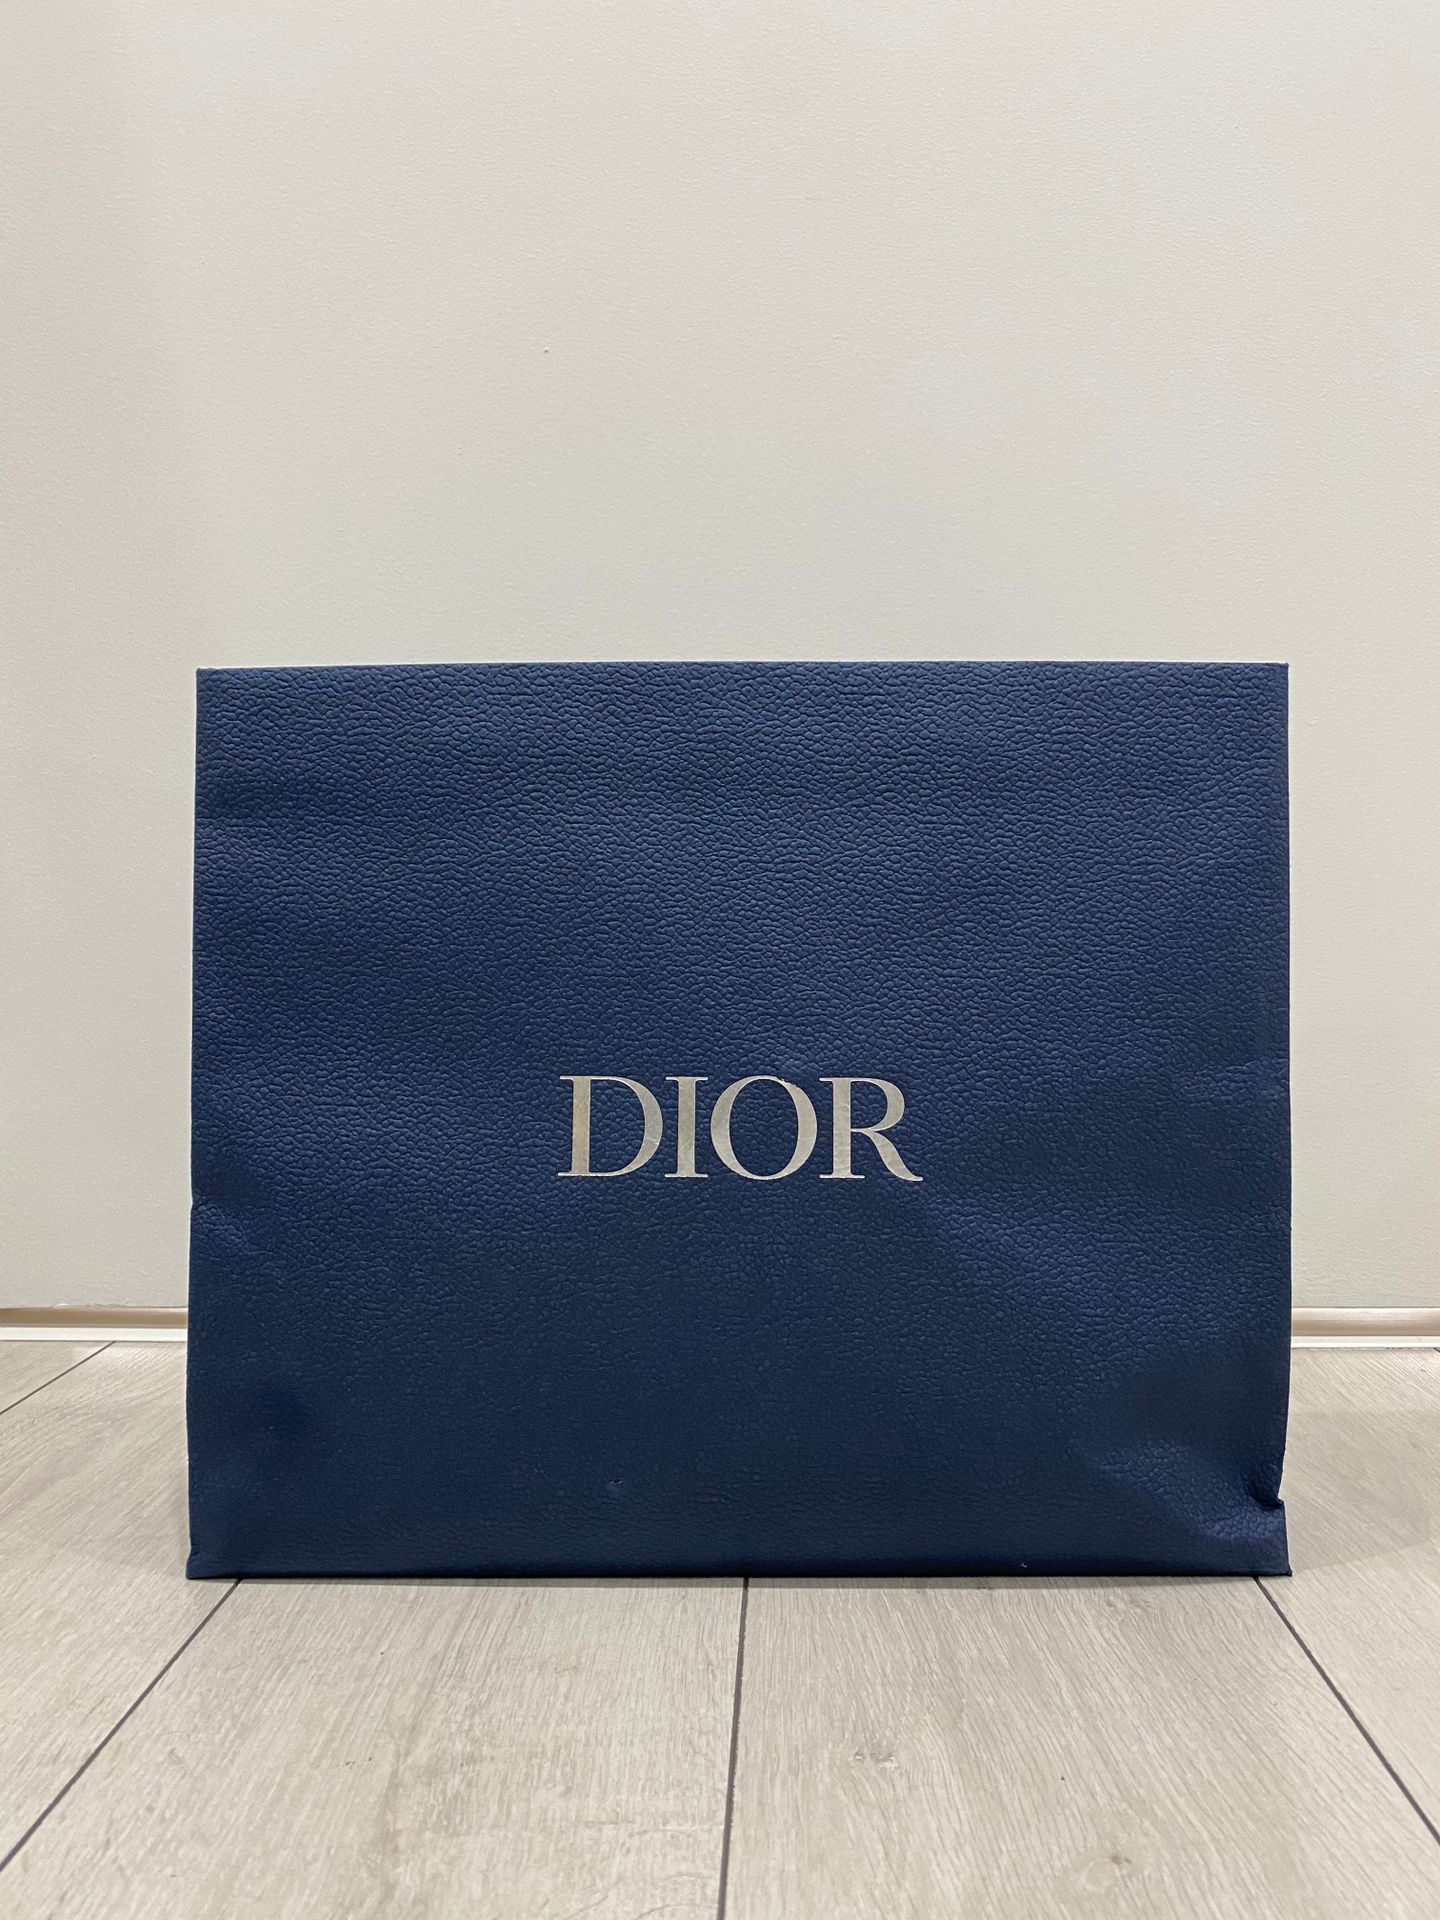 Pack Dior Produits de beauté 迪奥美容产品包